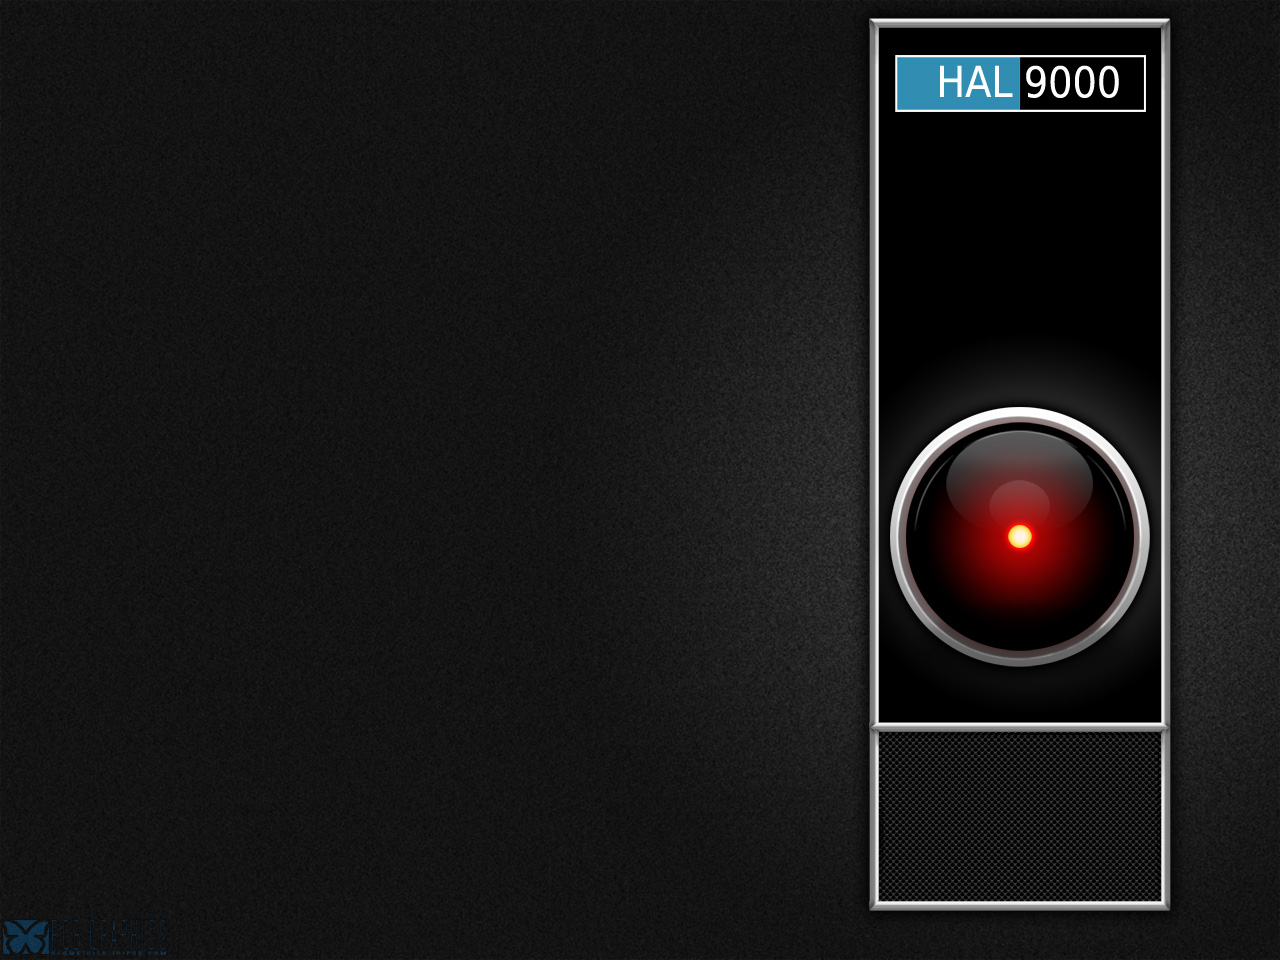 Pixel Xám ::.. Hình nền Hal 9000: Pixel Xám ::.. Hình nền Hal 9000, mang đến cho bạn một không gian vô tận của khoa học viễn tưởng. Với màu sắc và chủ đề độc đáo, hình nền này sẽ khiến cho chiếc máy tính của bạn đẹp hơn và thu hút nhiều sự chú ý hơn. Hãy tải về ngay bây giờ để trải nghiệm.